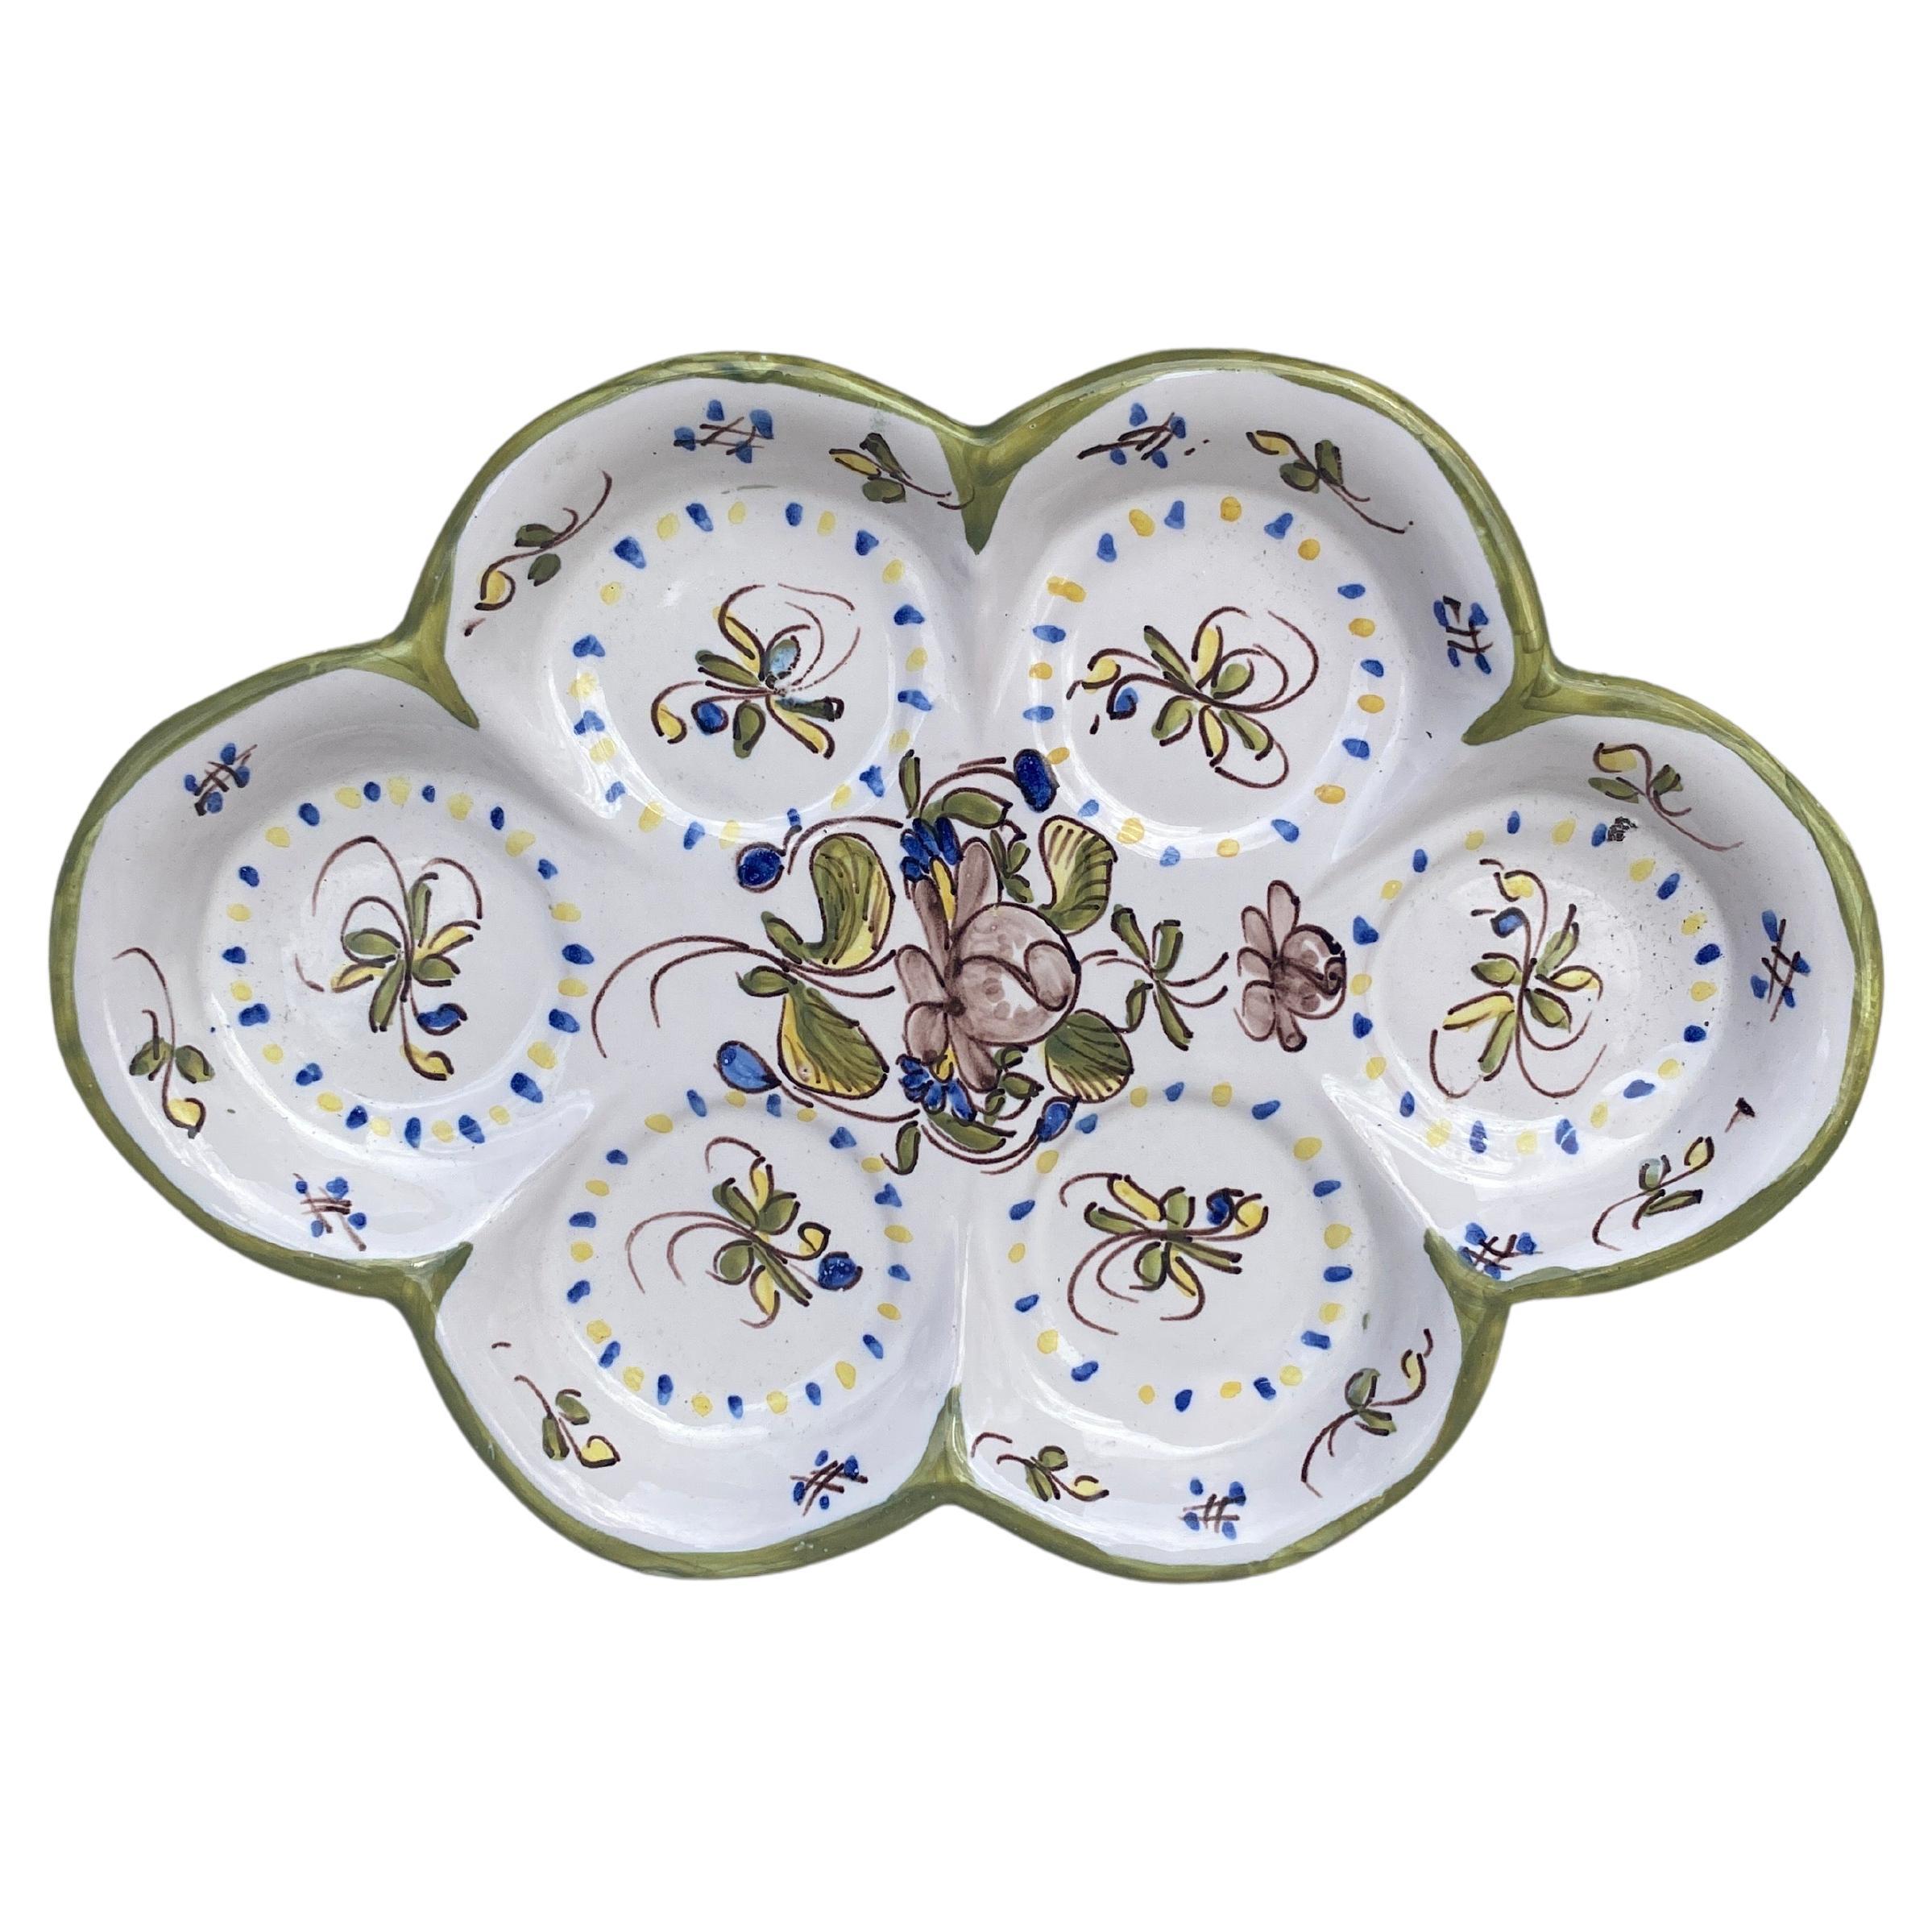 Ovaler französischer Fayence-Teller aus Fayence mit Blumen im Moustiers-Stil